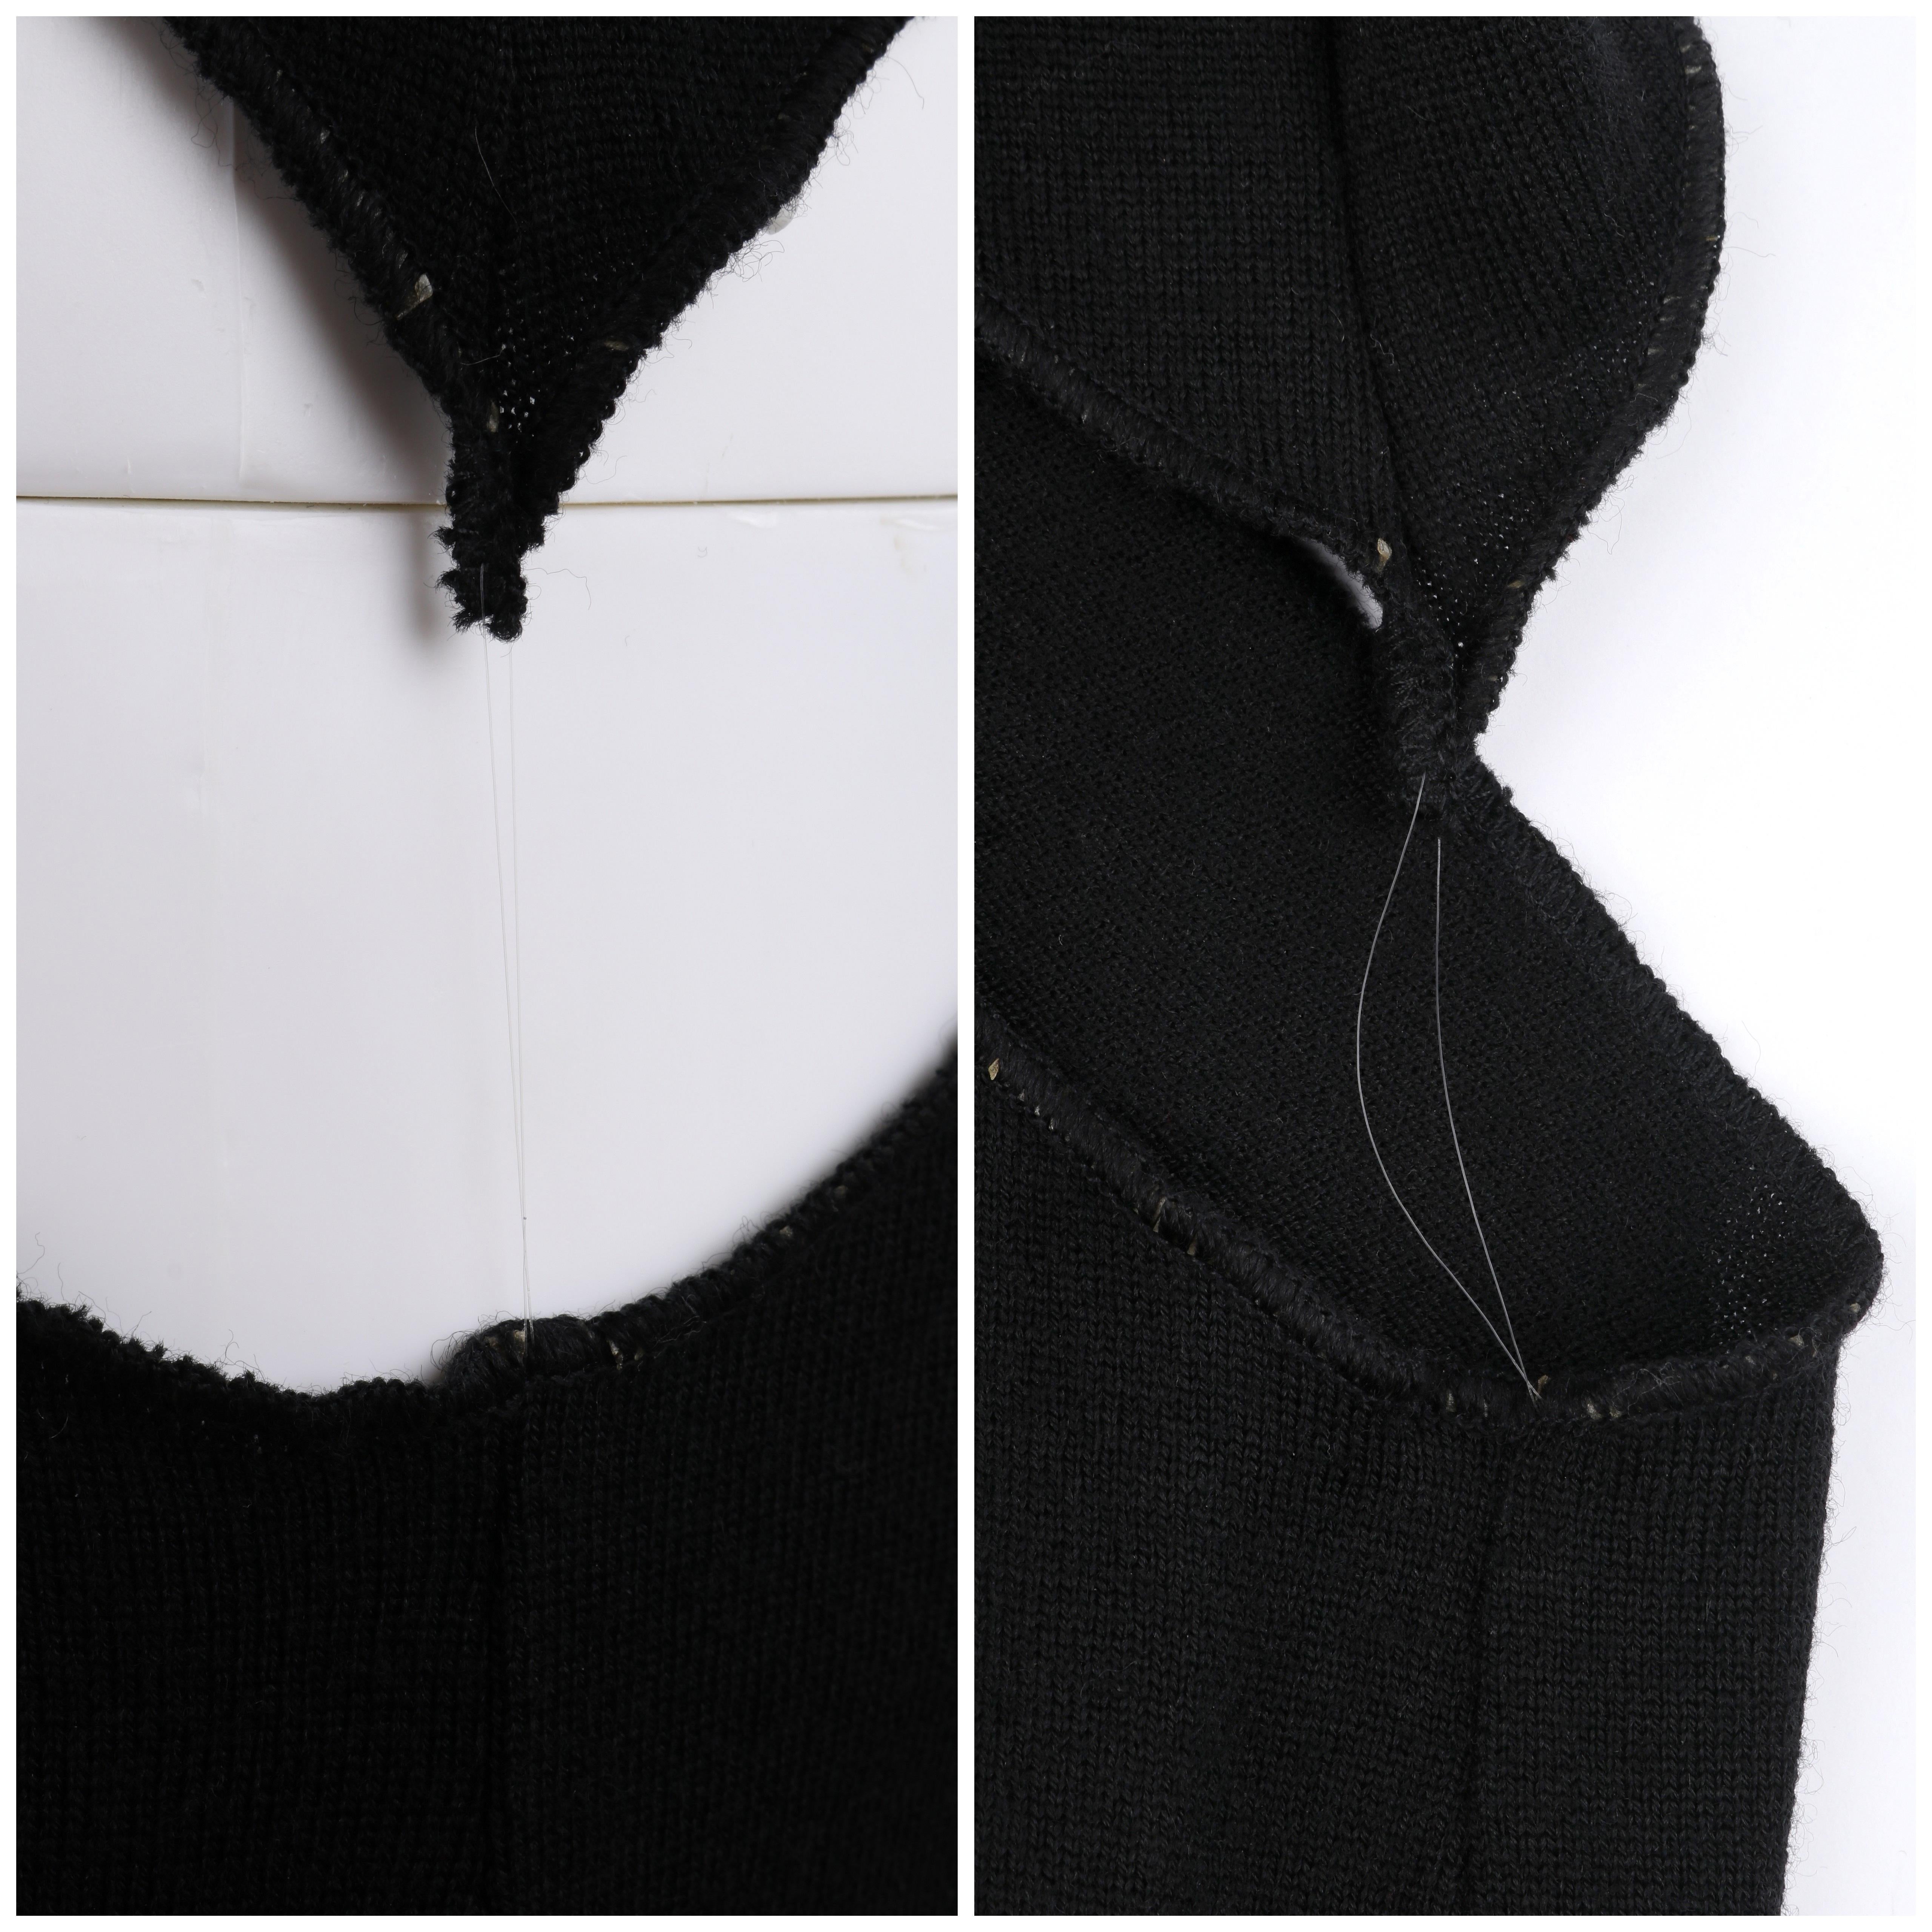 ALEXANDER McQUEEN S/S 1997 “La Poupée” Black Wool Illusion Cutout Cocktail Dress For Sale 4